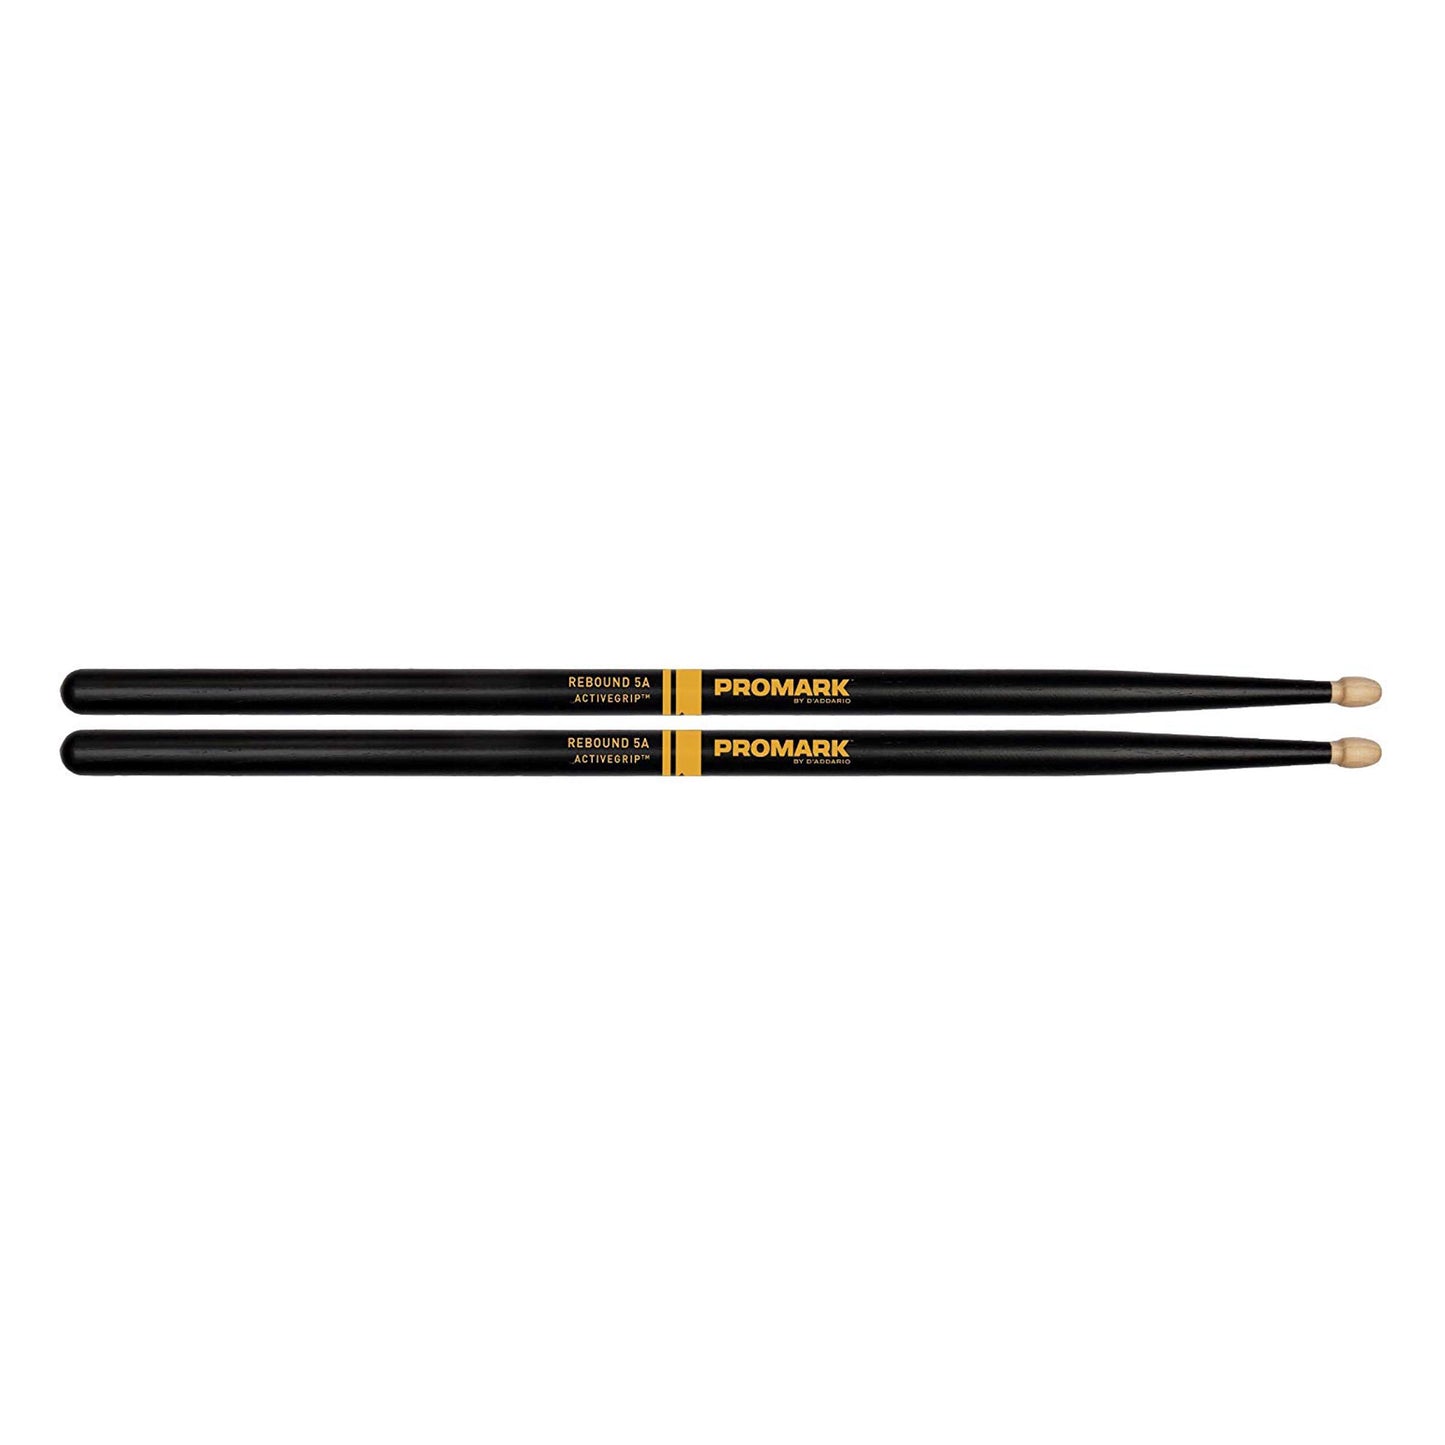 Promark ActiveGrip Rebound 5A Drumsticks, Acorn Tip, Black